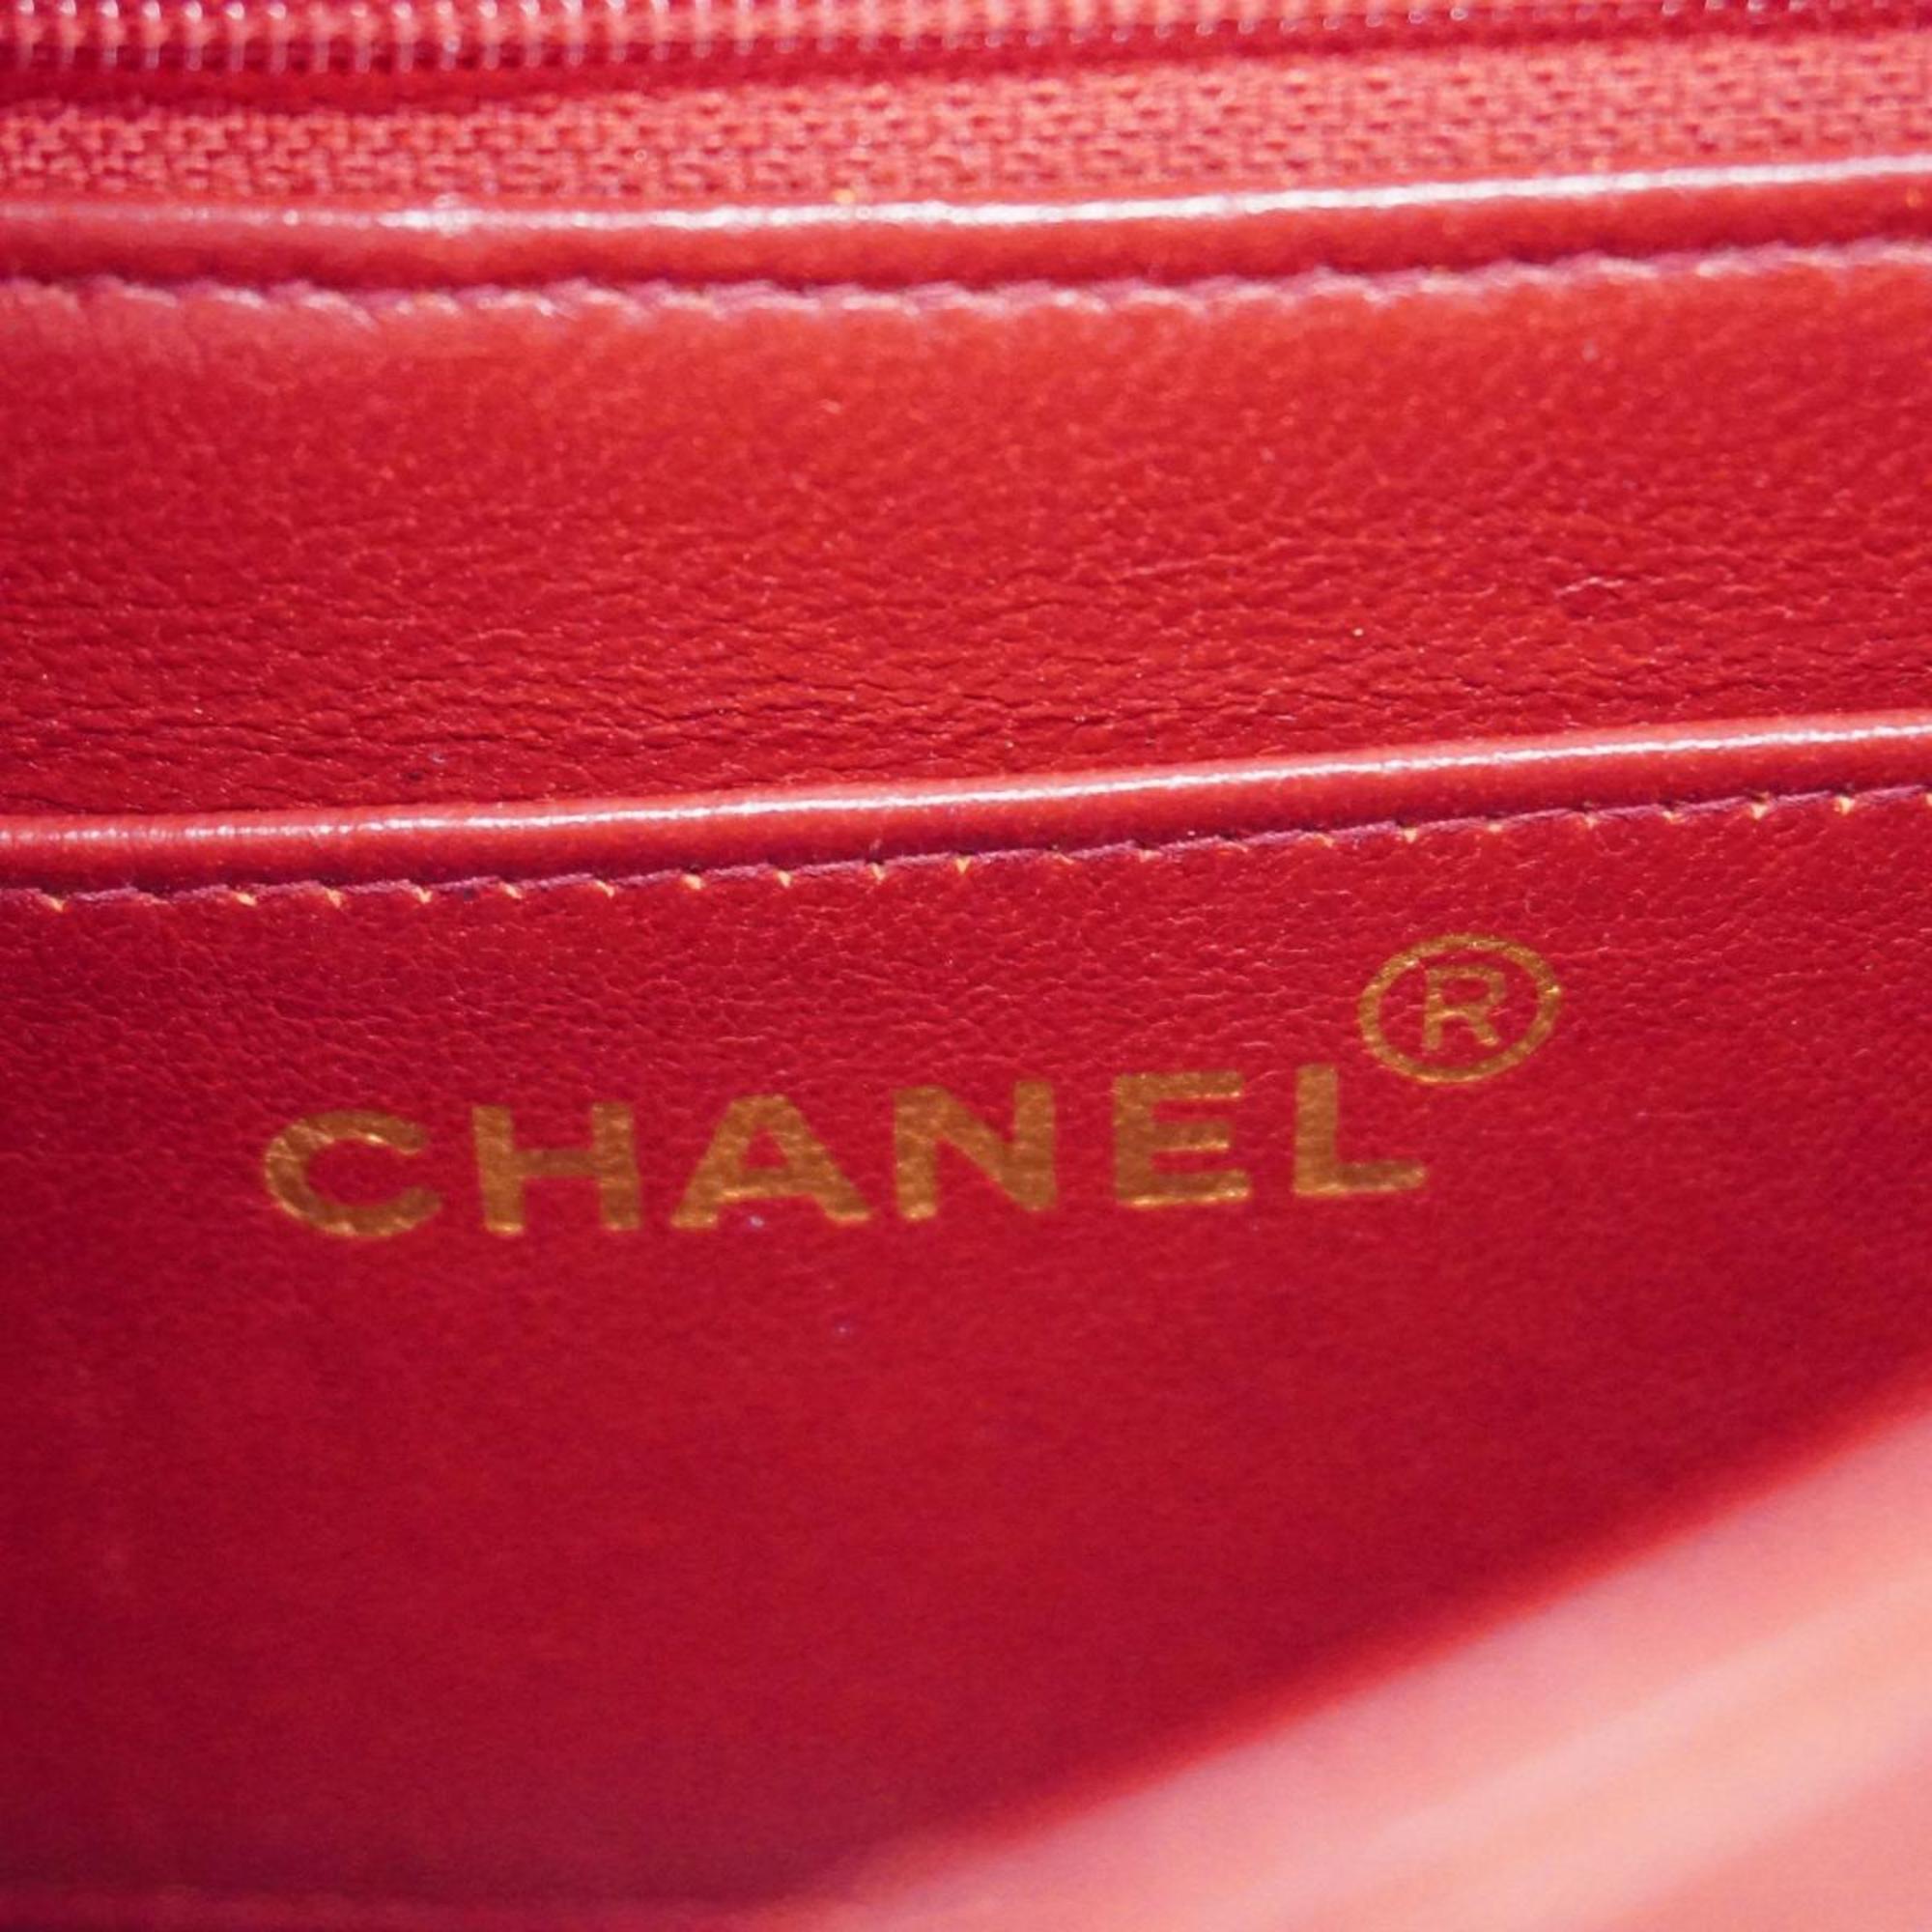 シャネル(Chanel) シャネル ショルダーバッグ マドモアゼル チェーンショルダー ラムスキン レッド   レディース